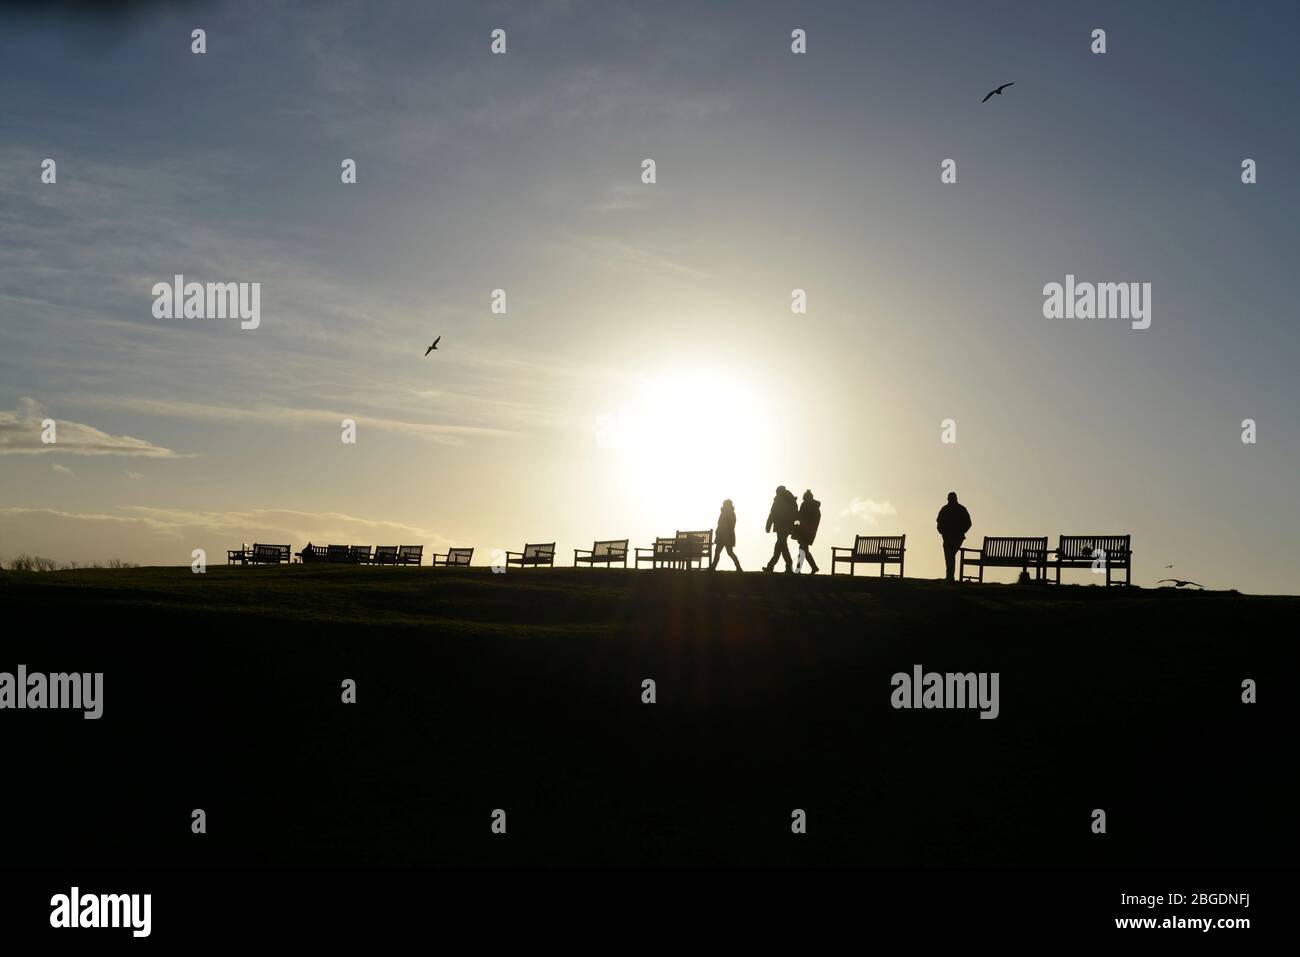 El sol que se hunde crea una silueta sorprendente de cuatro figuras que caminan por una fila de asientos de banco en una colina con efecto de sol de halo y cielo azul pálido Foto de stock